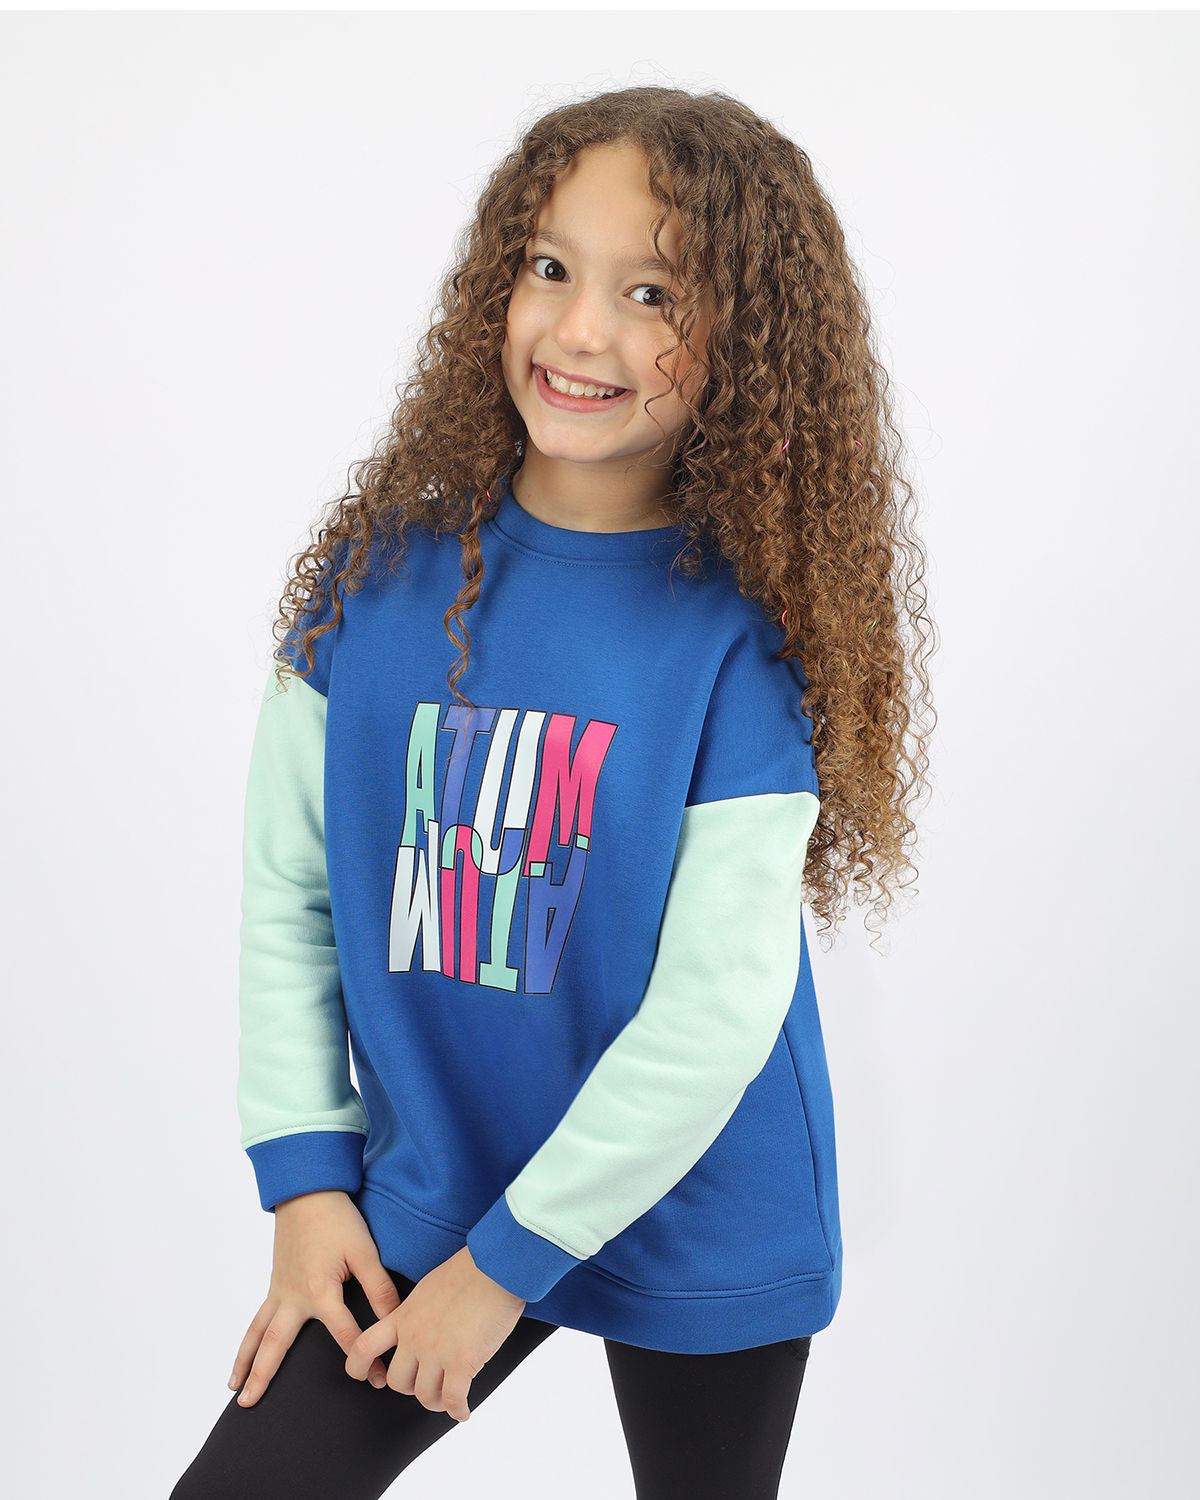 Atum Girl's Sweatshirt